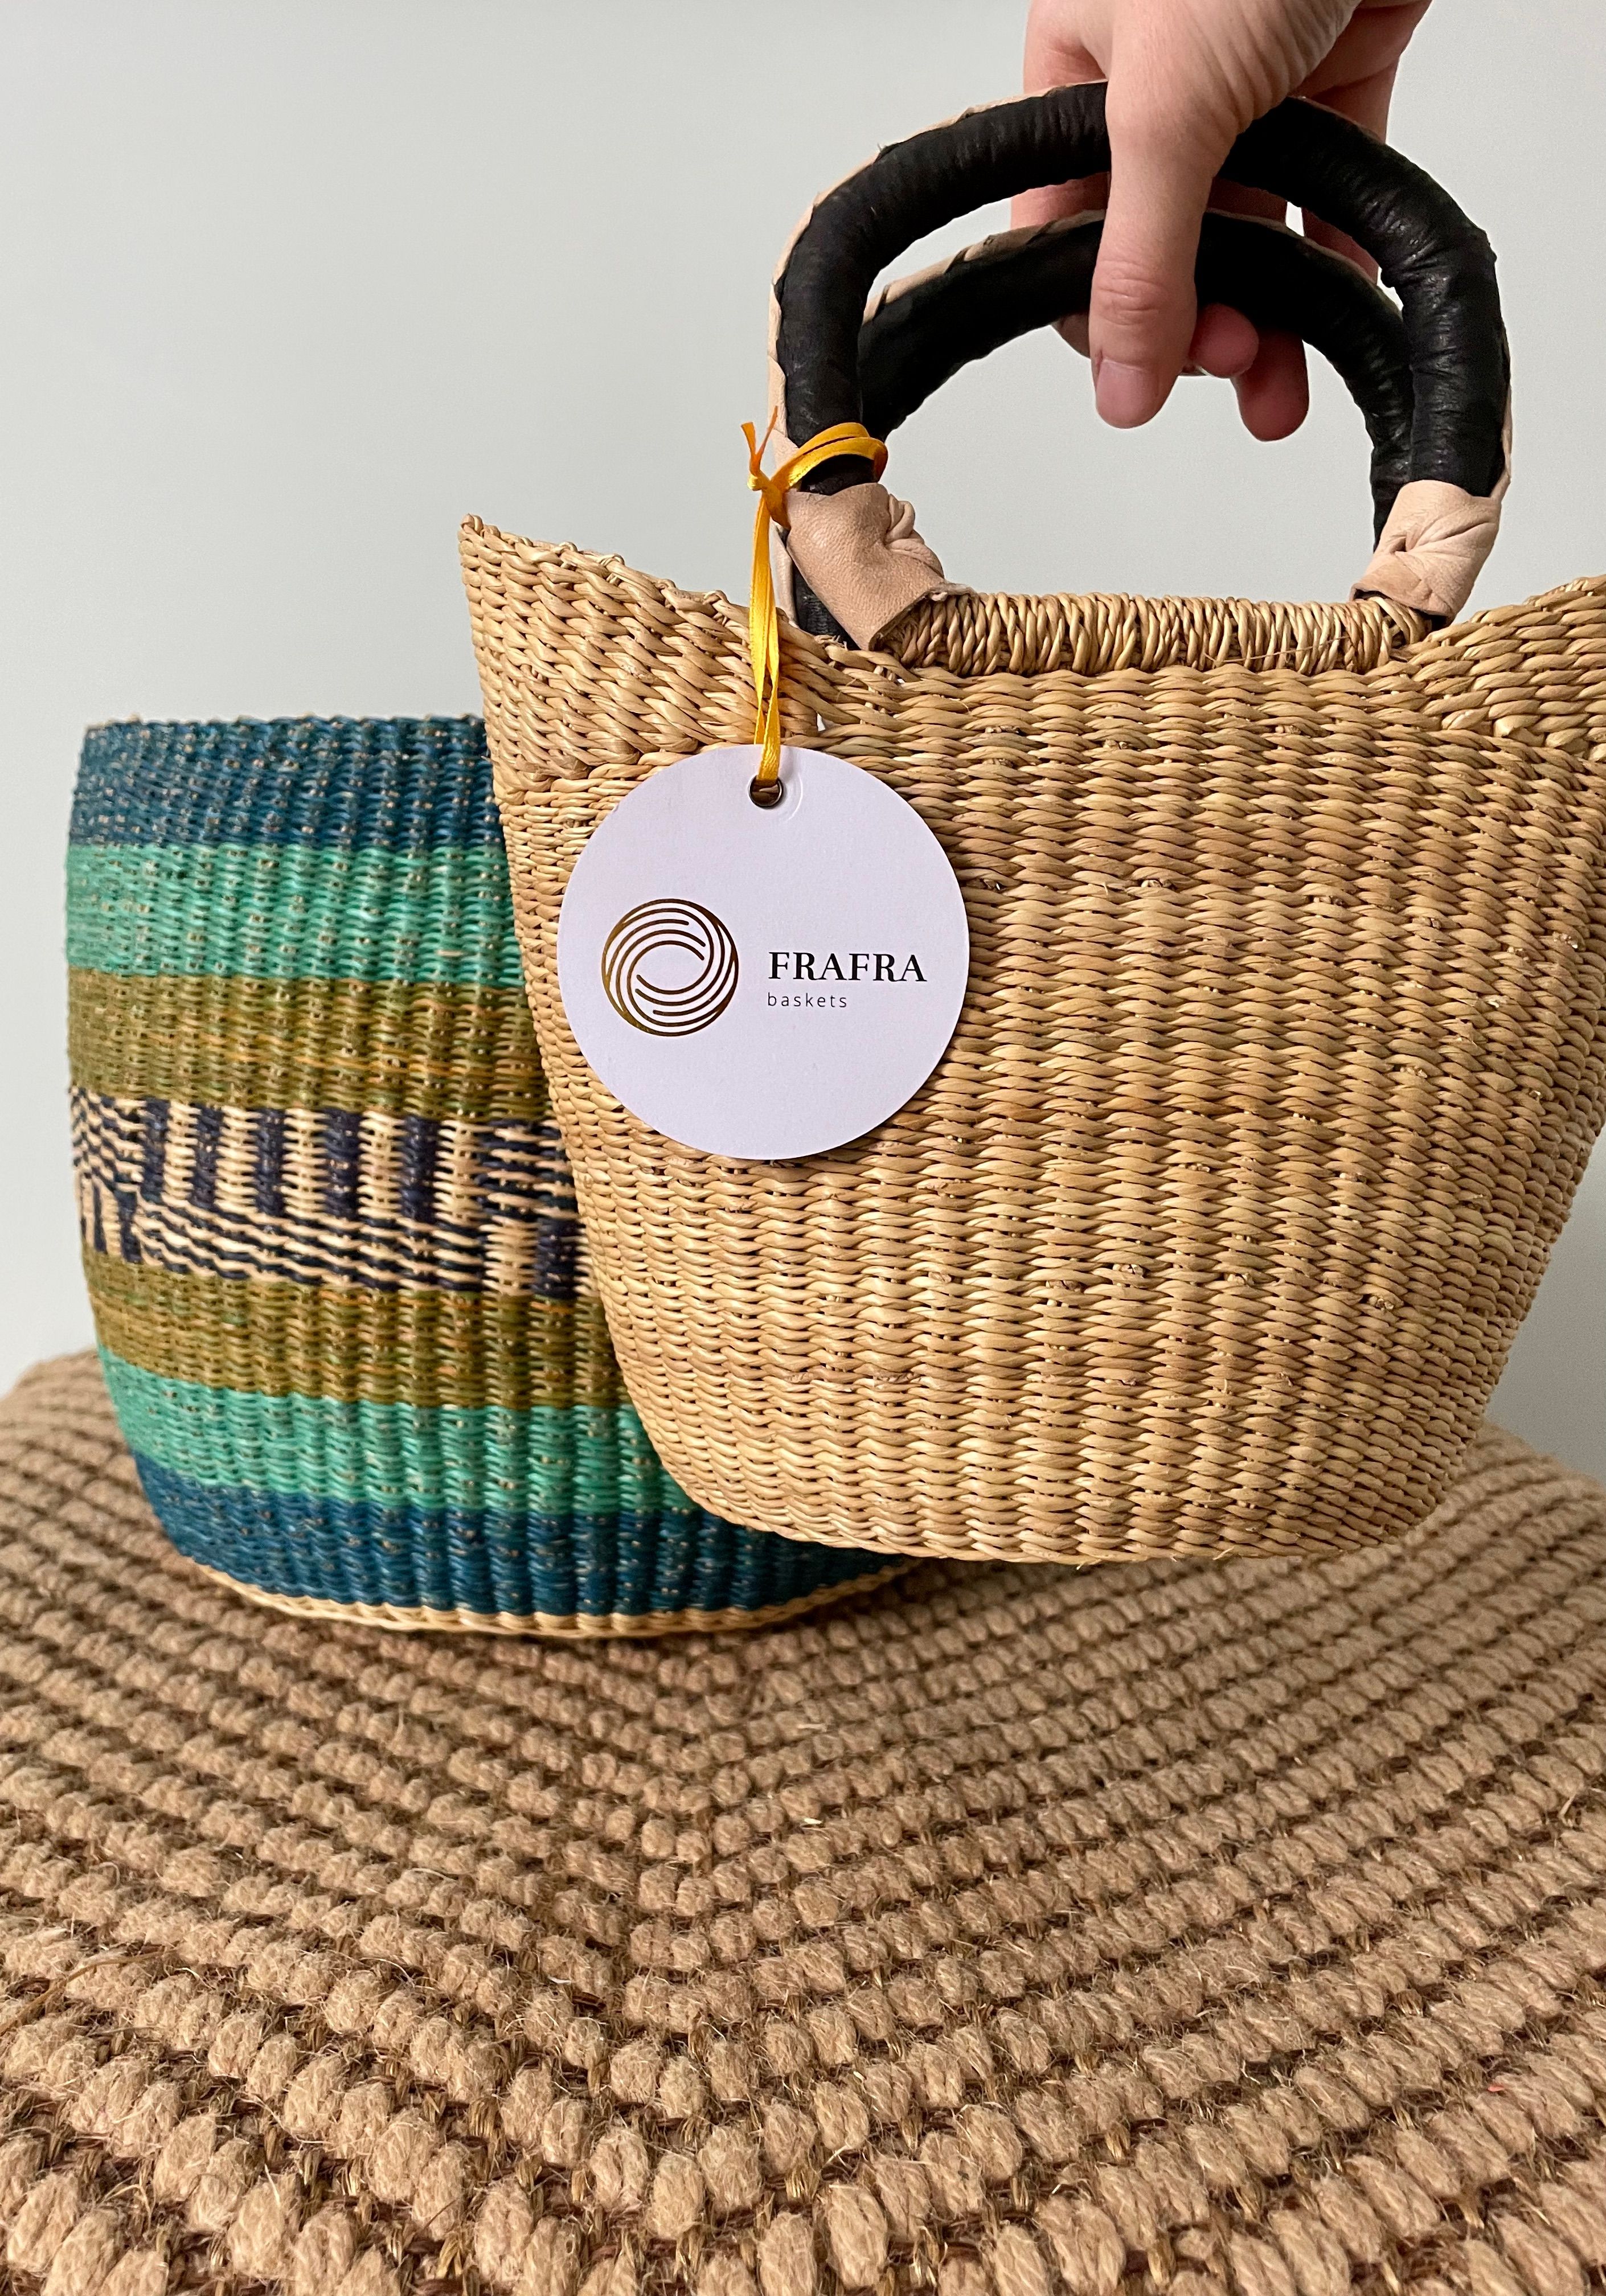 Frafra Baskets Ltd